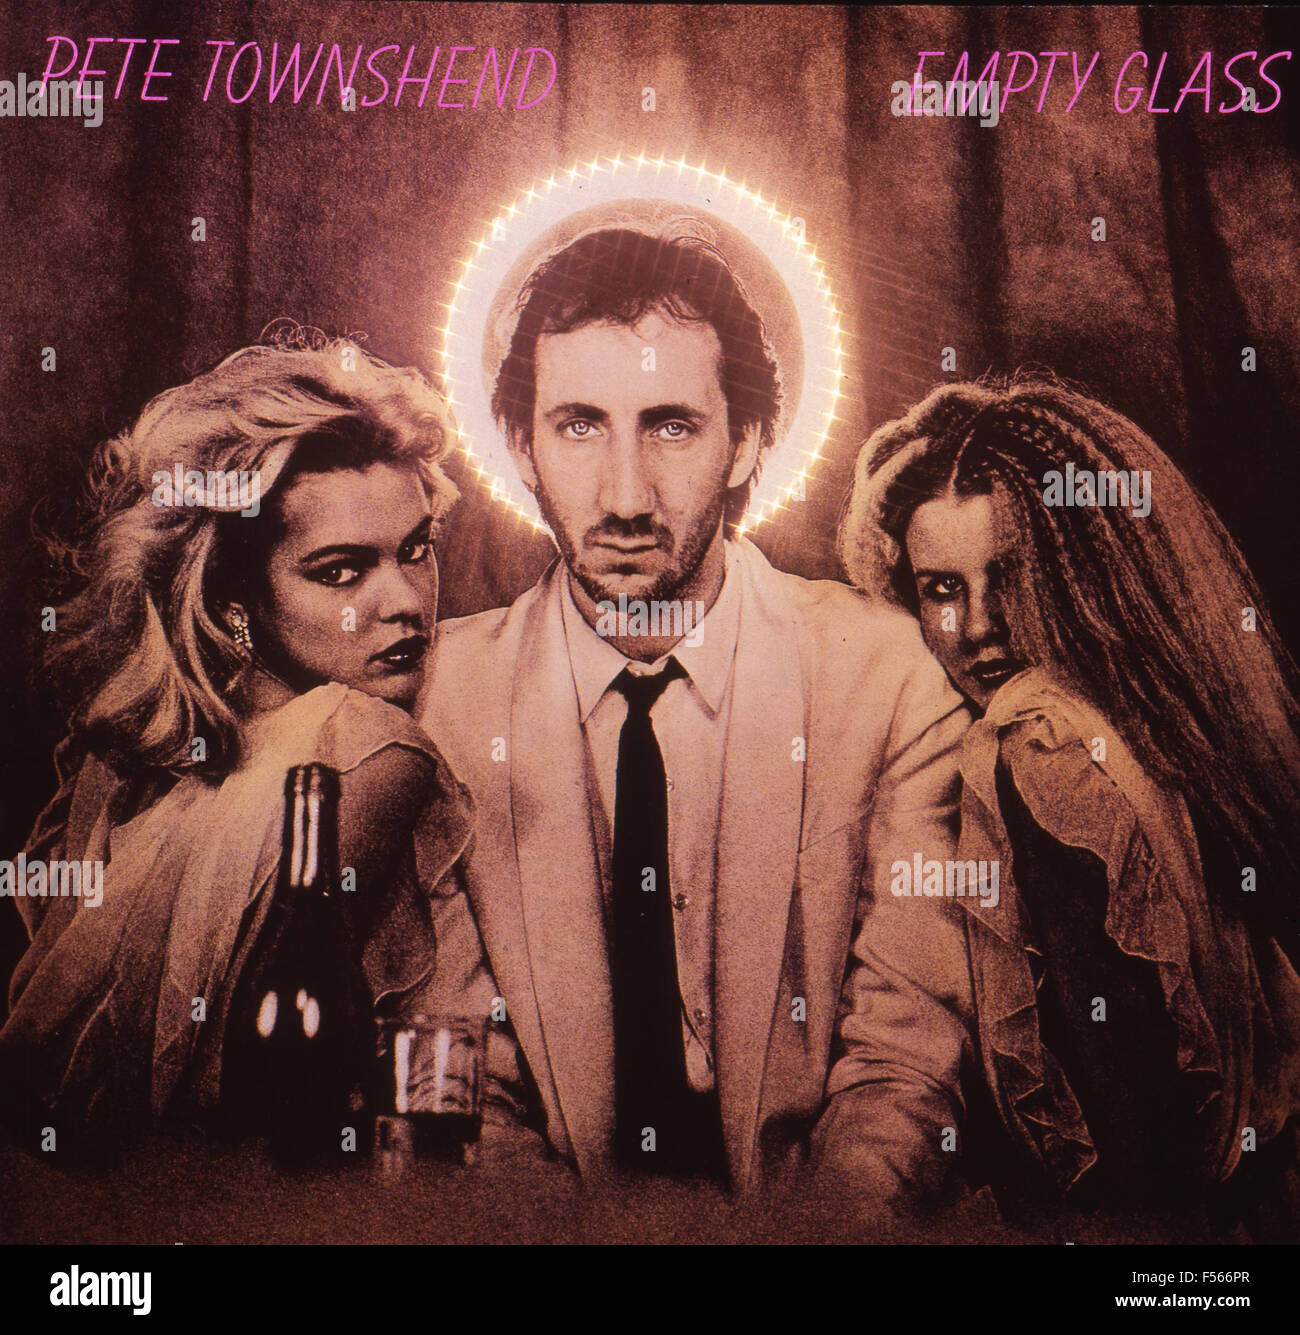 Svuotare il coperchio di vetro del 1980 album da solista di Pete Townshend. Solo uso editoriale. Foto Stock